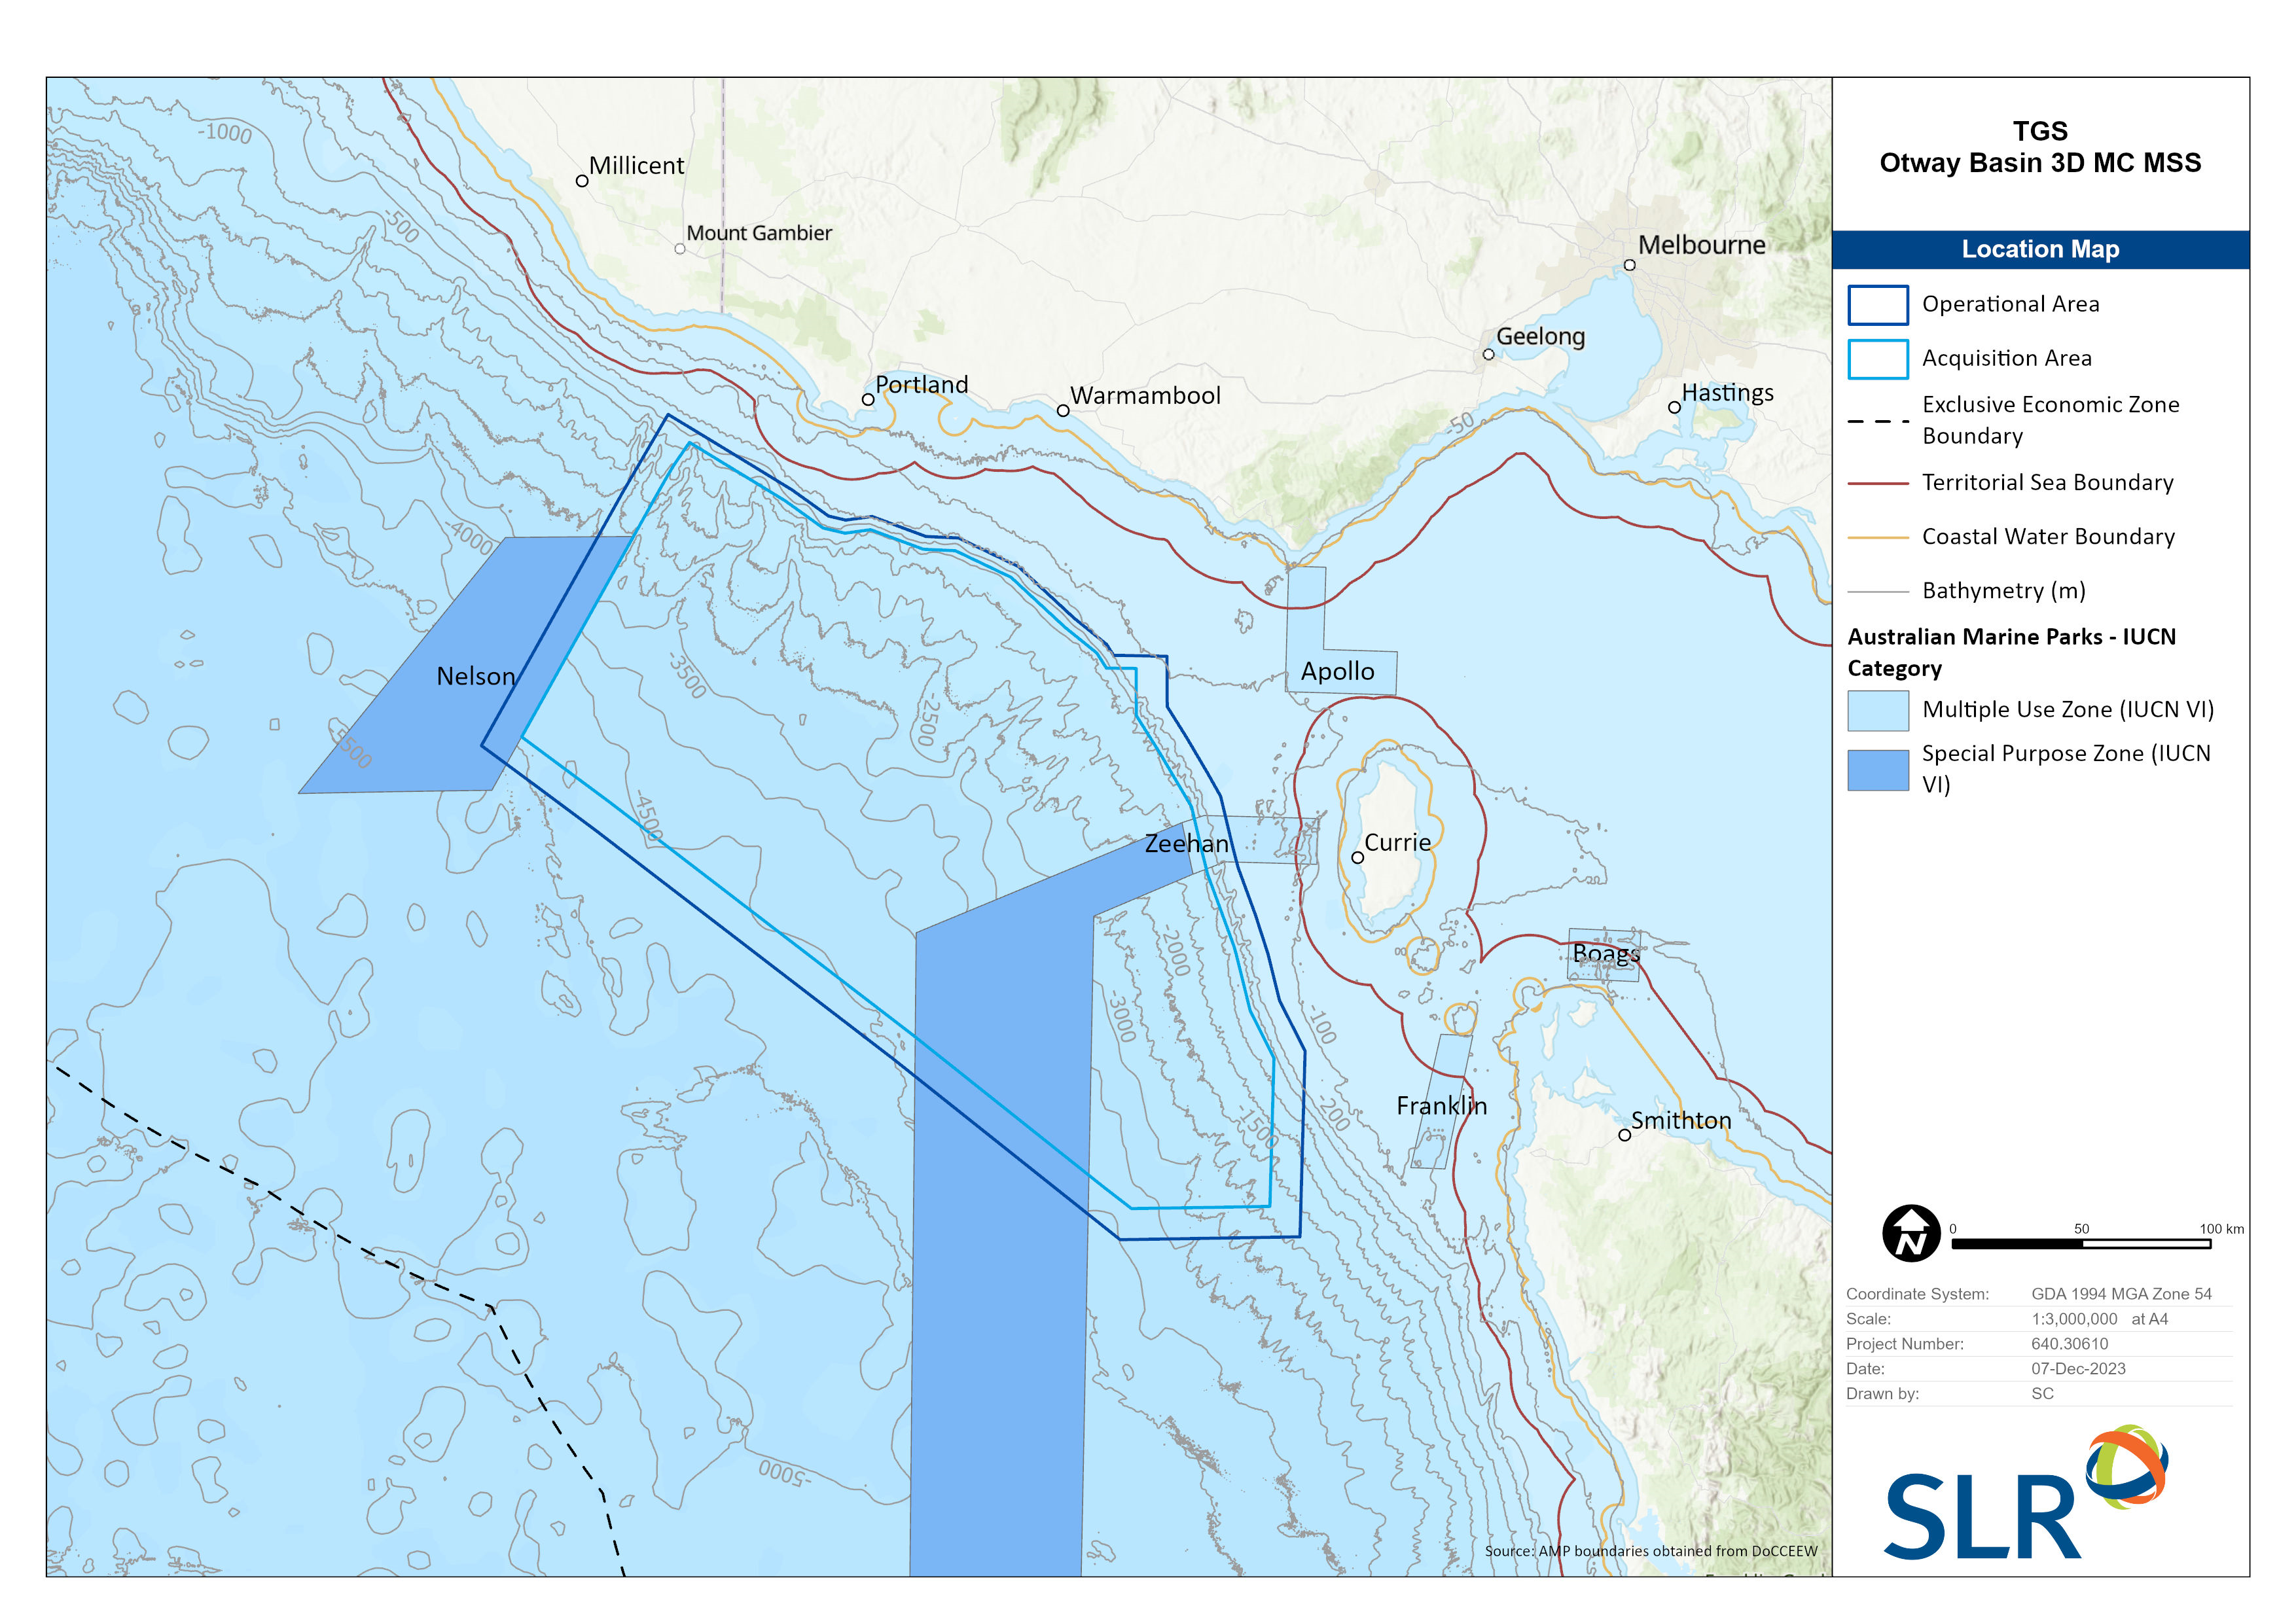 Location map - Activity: Otway Basin 3D Multi-client Marine Seismic Survey (refer to description)